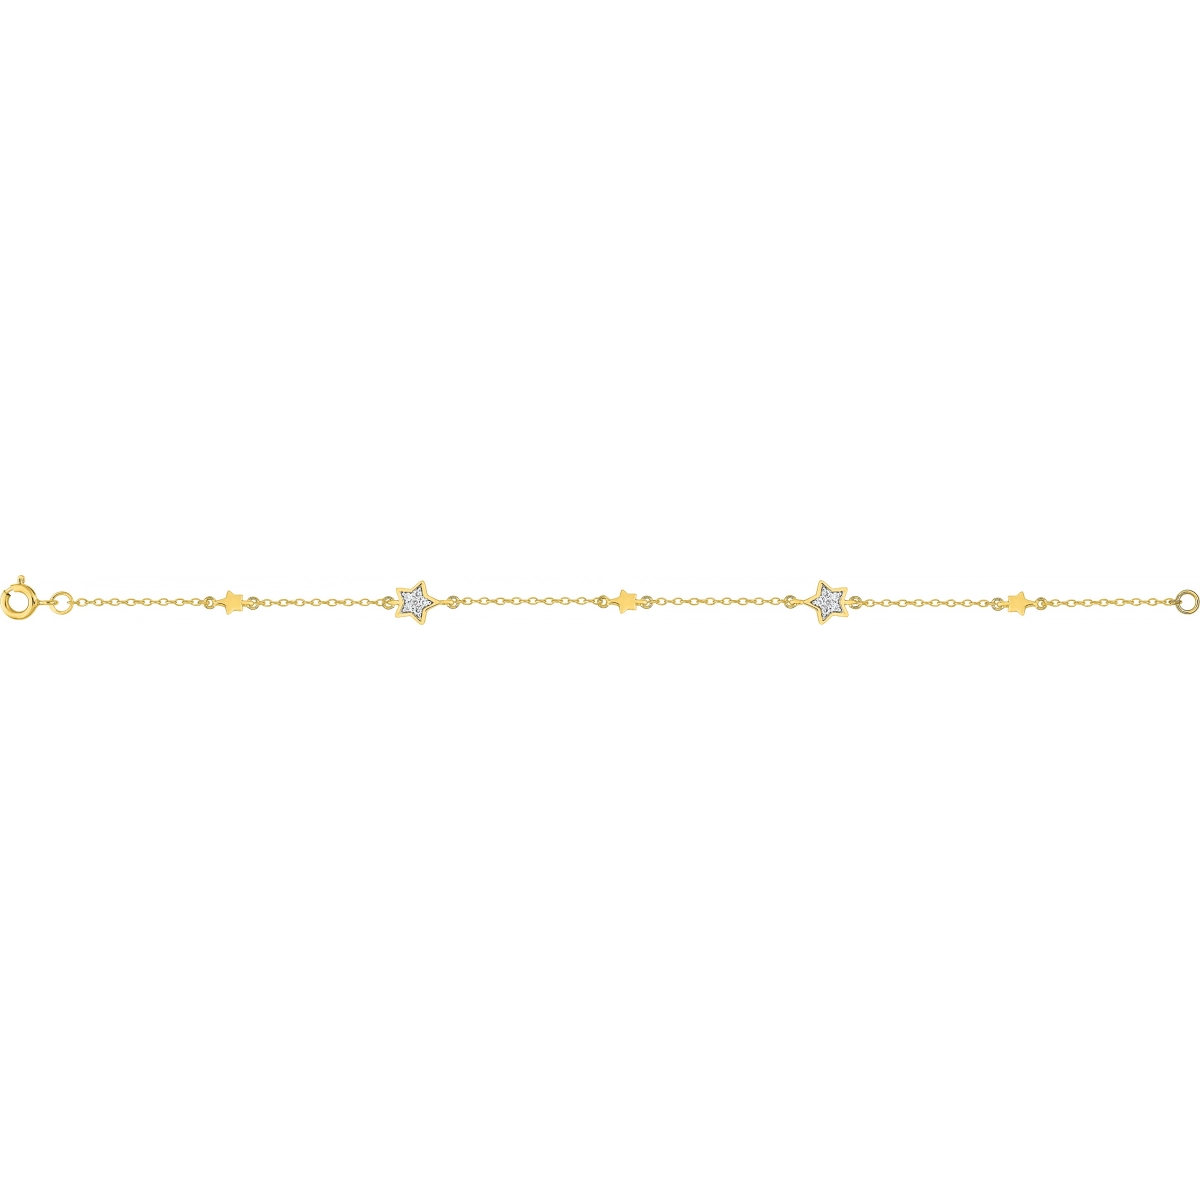 Bracelet w. cz gold plated Brass  Lua Blanca  BSBT68Z18.0